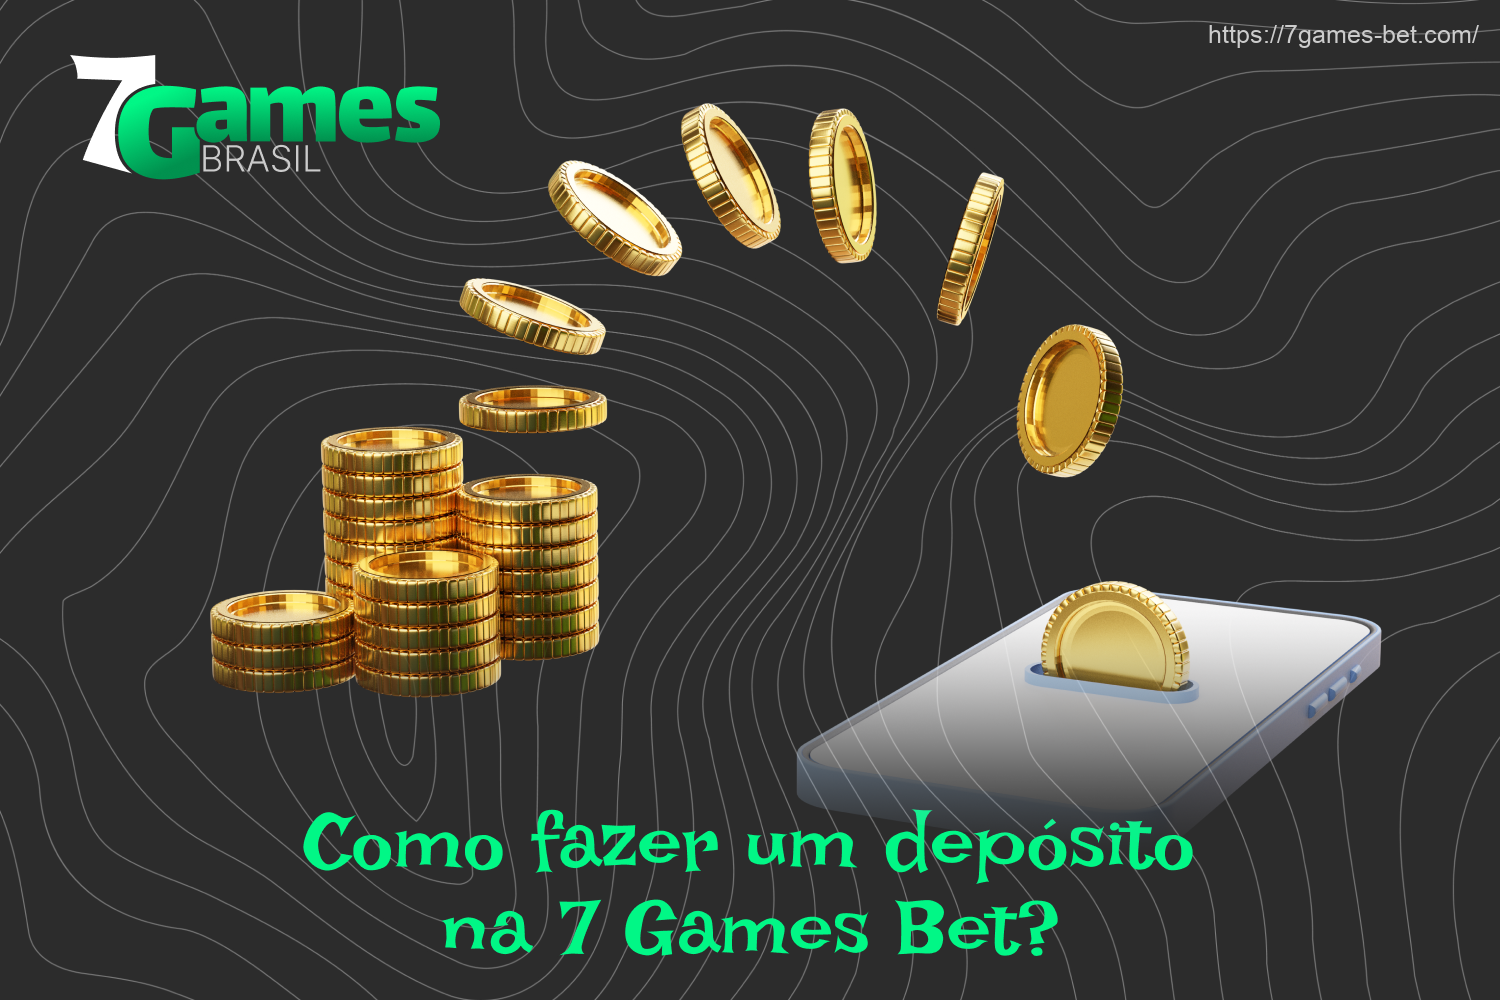 Depois de se registrar no 7Games, os jogadores do Brasil podem fazer um depósito e jogar com dinheiro real